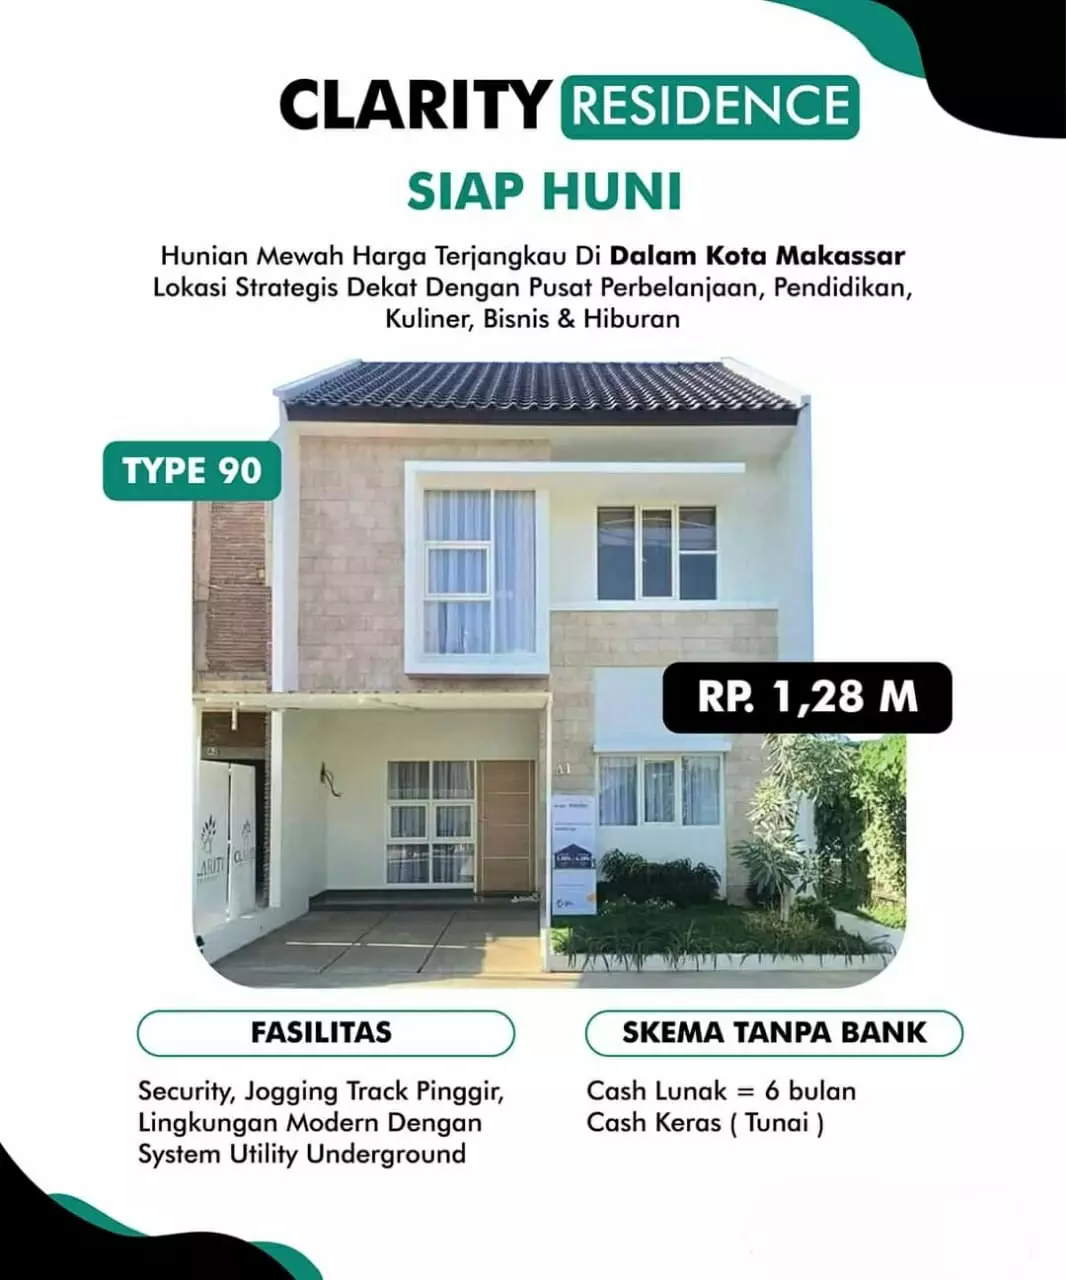 Rumah di Kota Makassar-siap huni-cover1